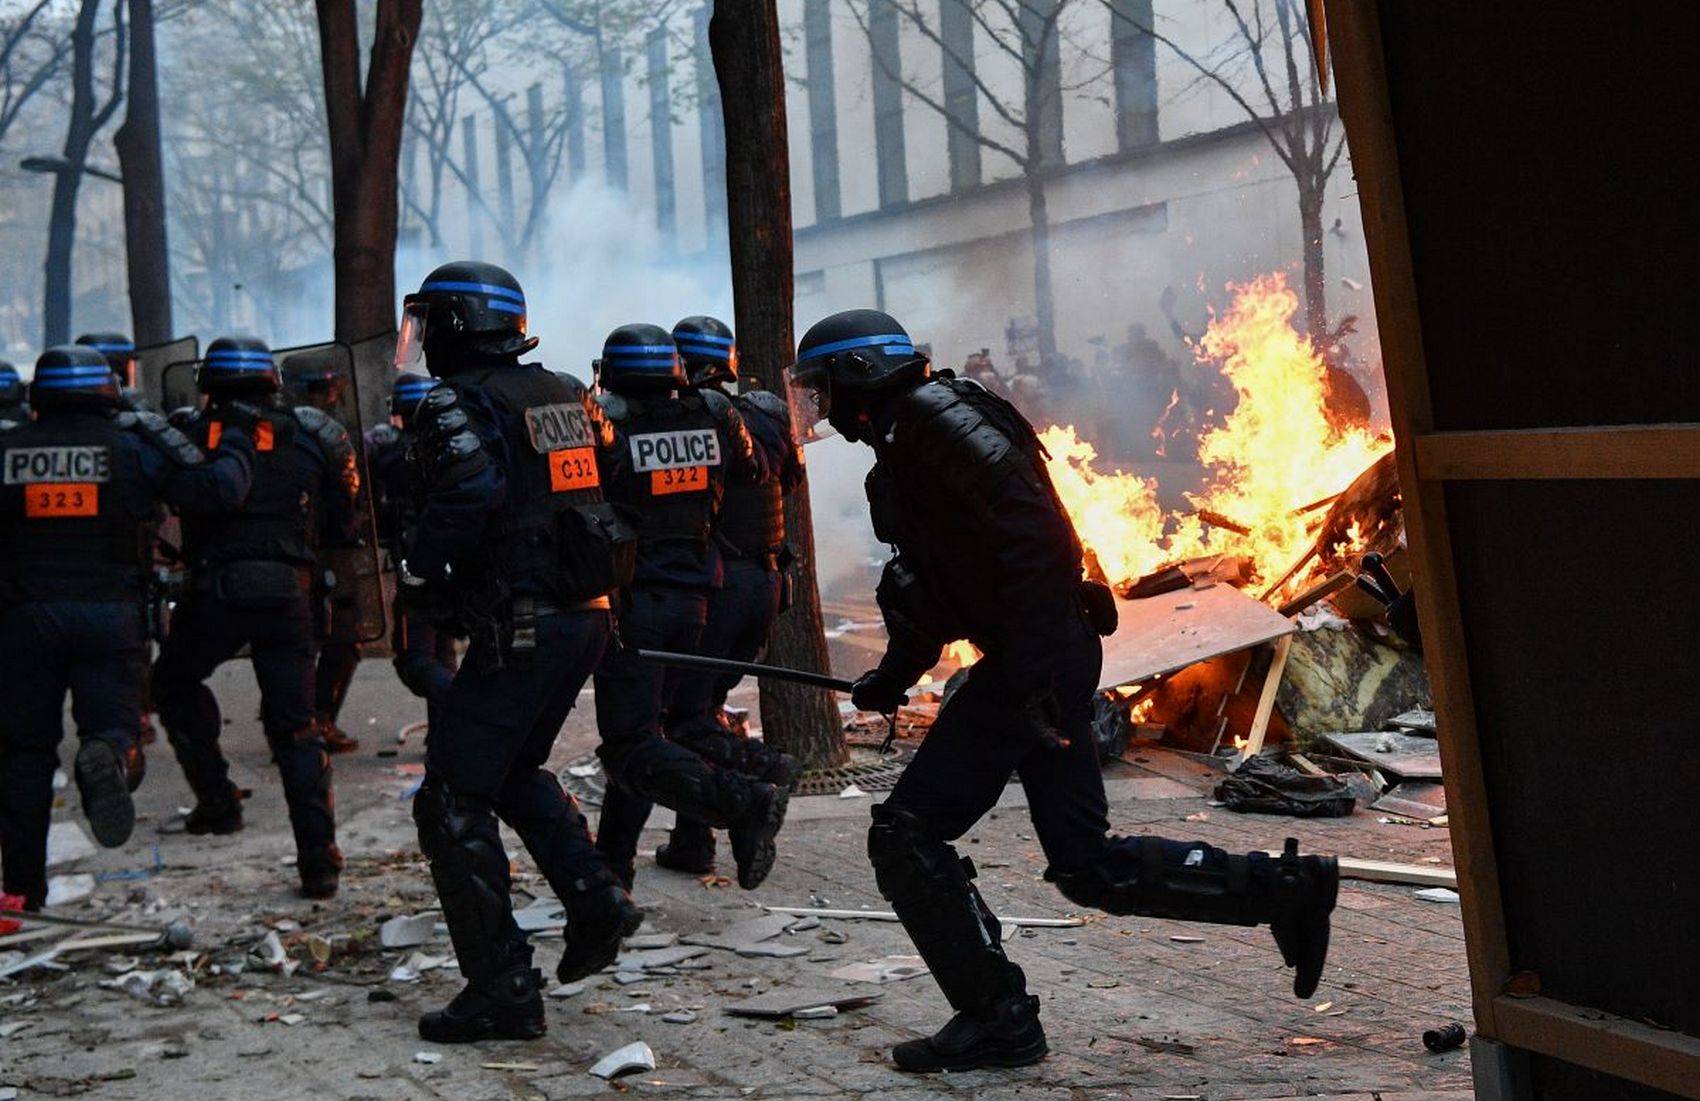 Палаючі машини, сутички з поліцією, сльозогінний газ: в Парижі поновилися протести (відео)